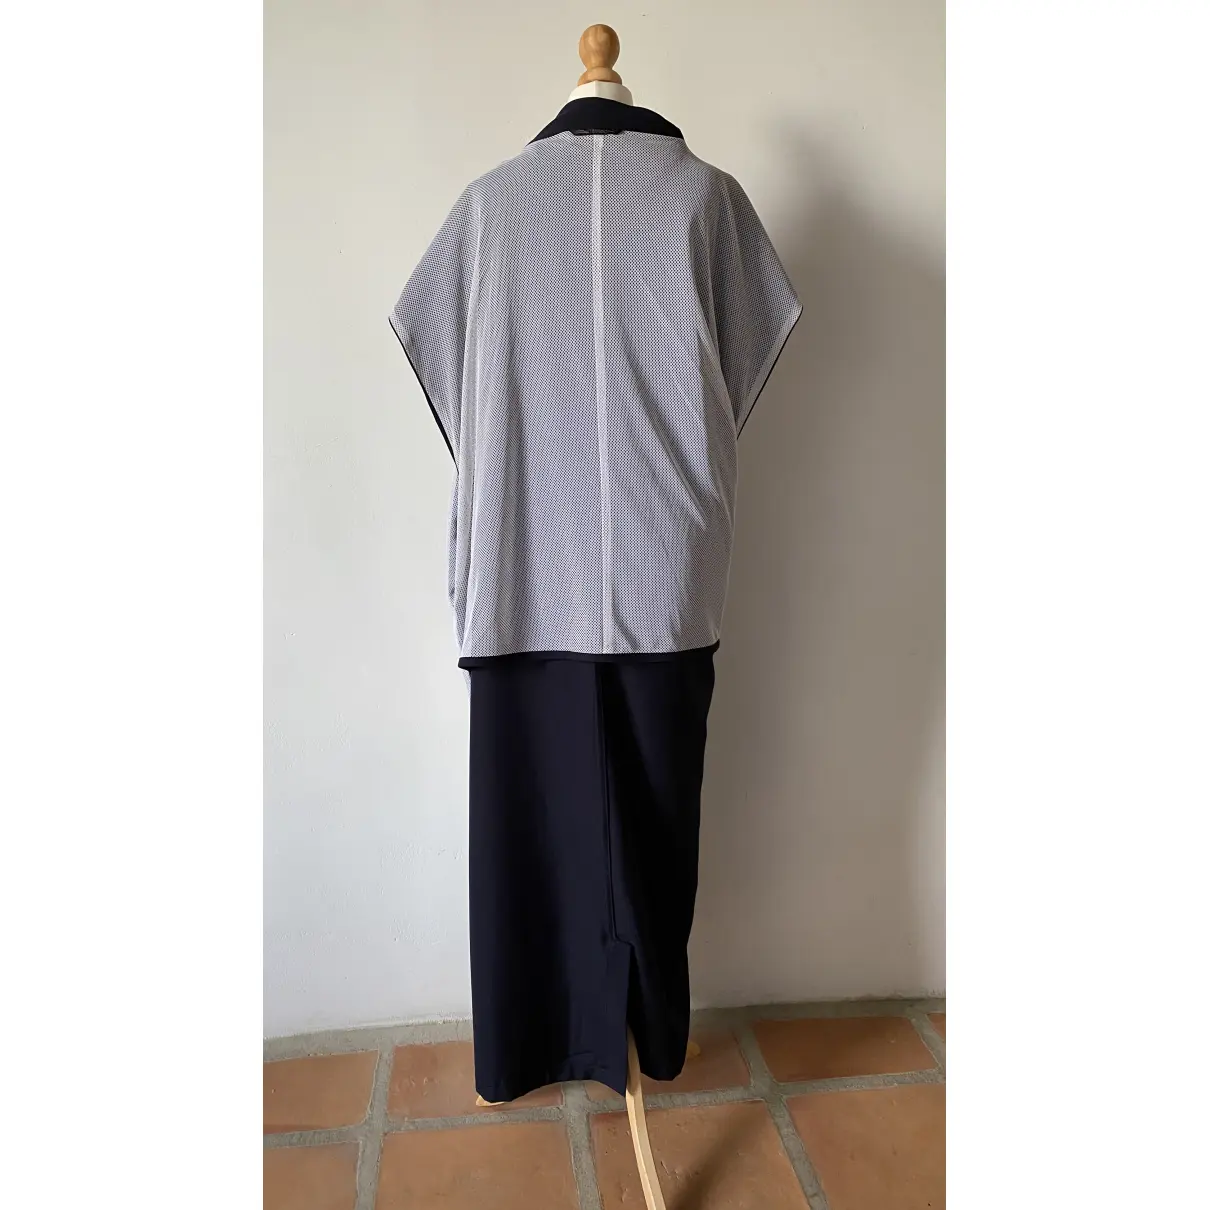 Wool maxi dress Yohji Yamamoto - Vintage